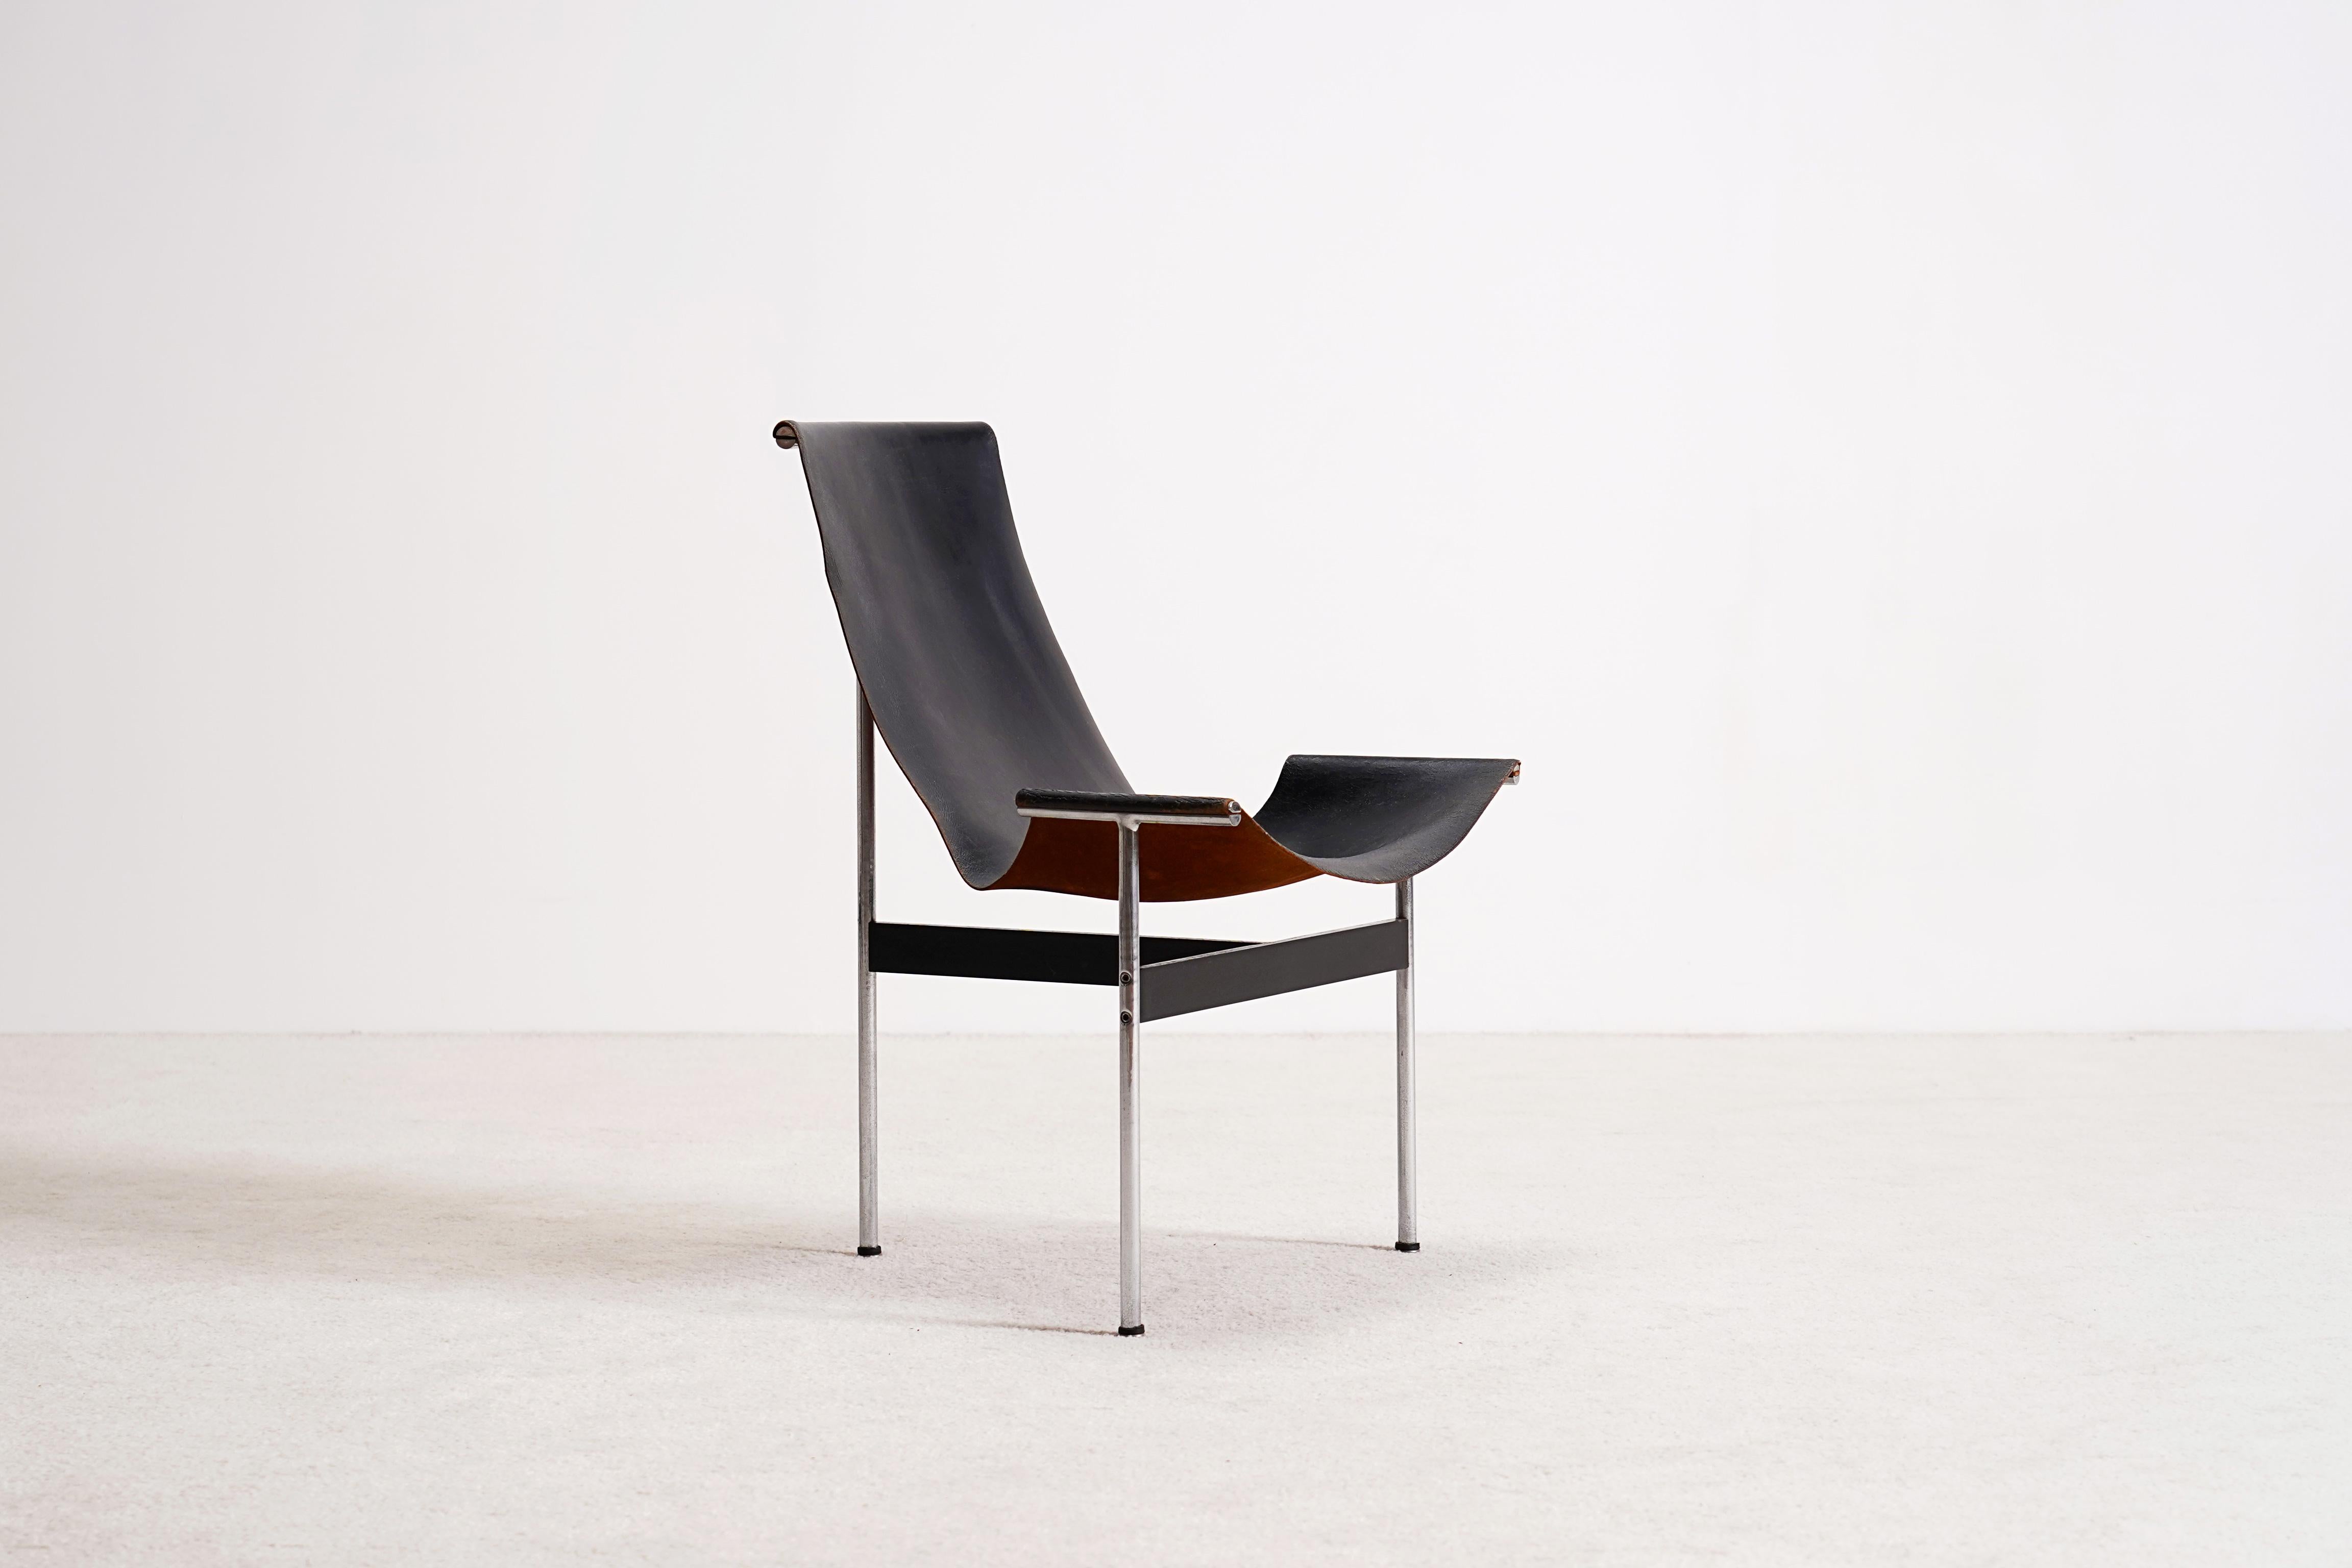 Einzelne dreibeinige Stühle, Modell T-Chair, entworfen von Katavolos, Kelley und Littell in den Jahren 1952 / 1953. Drei T-förmige Stahlbeine halten das schwarze Leder in Position. Das Leder ist nur an drei Punkten mit dem Rahmen verbunden, wodurch